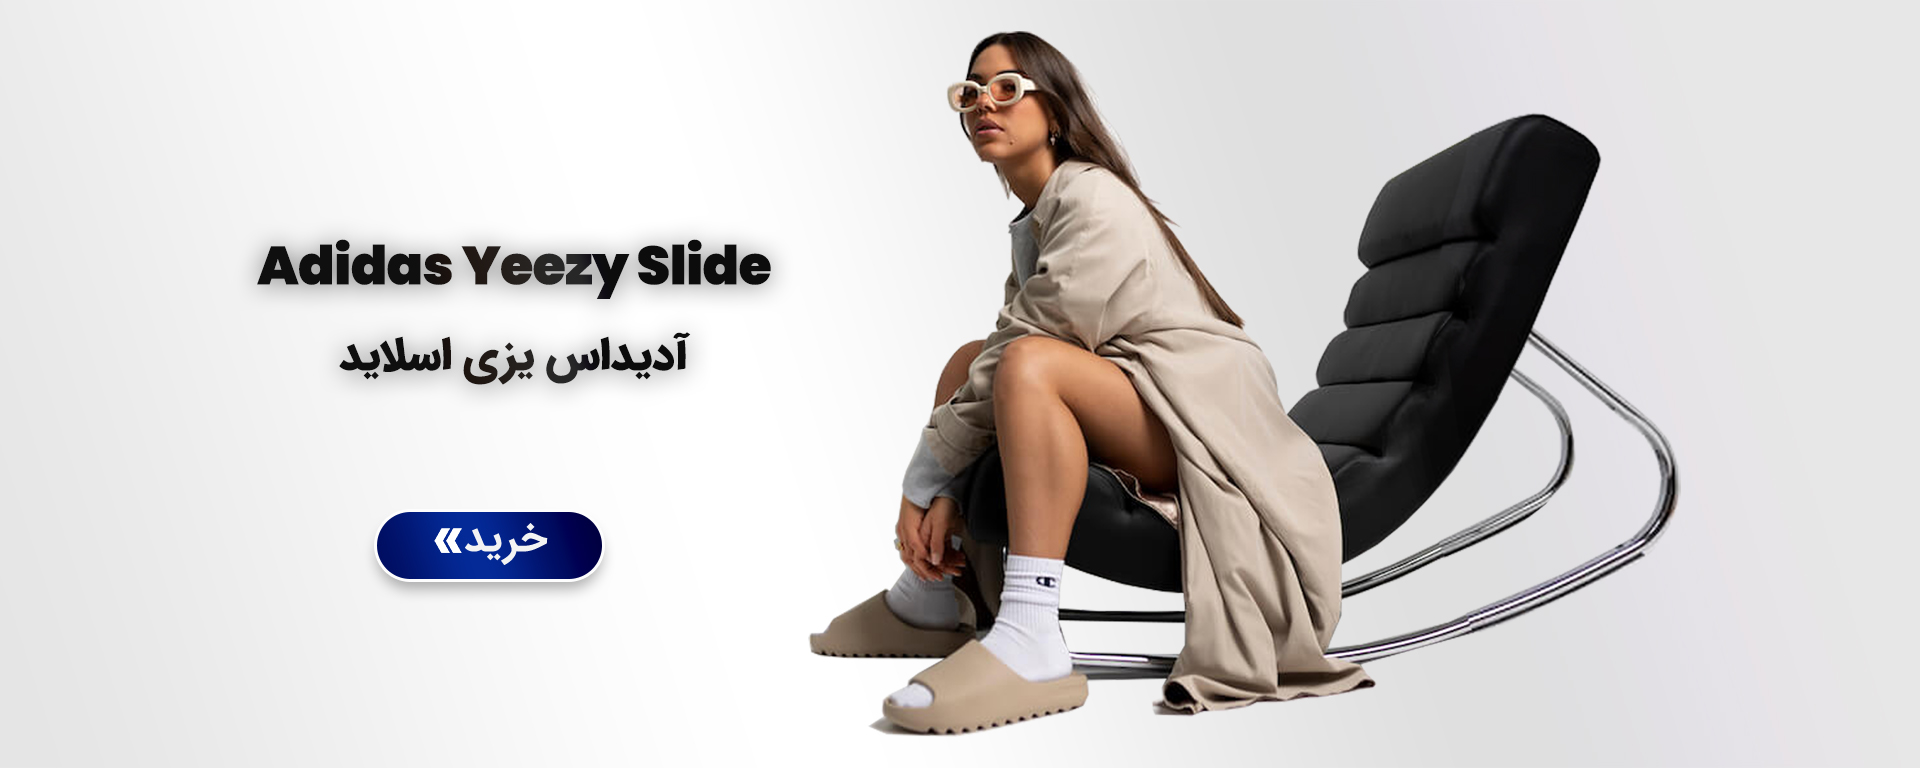 Adidas Yeezy Slide web